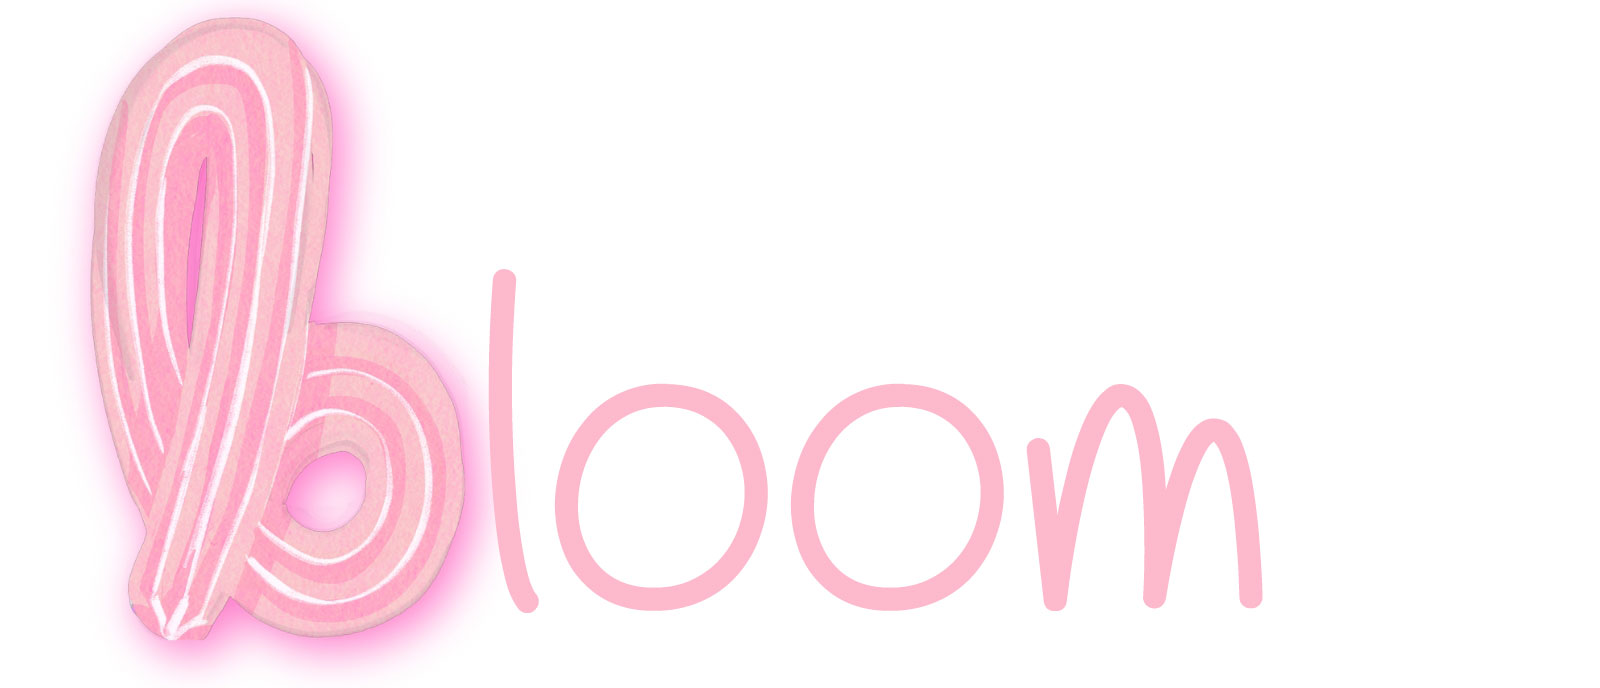 Bloom Marketing App